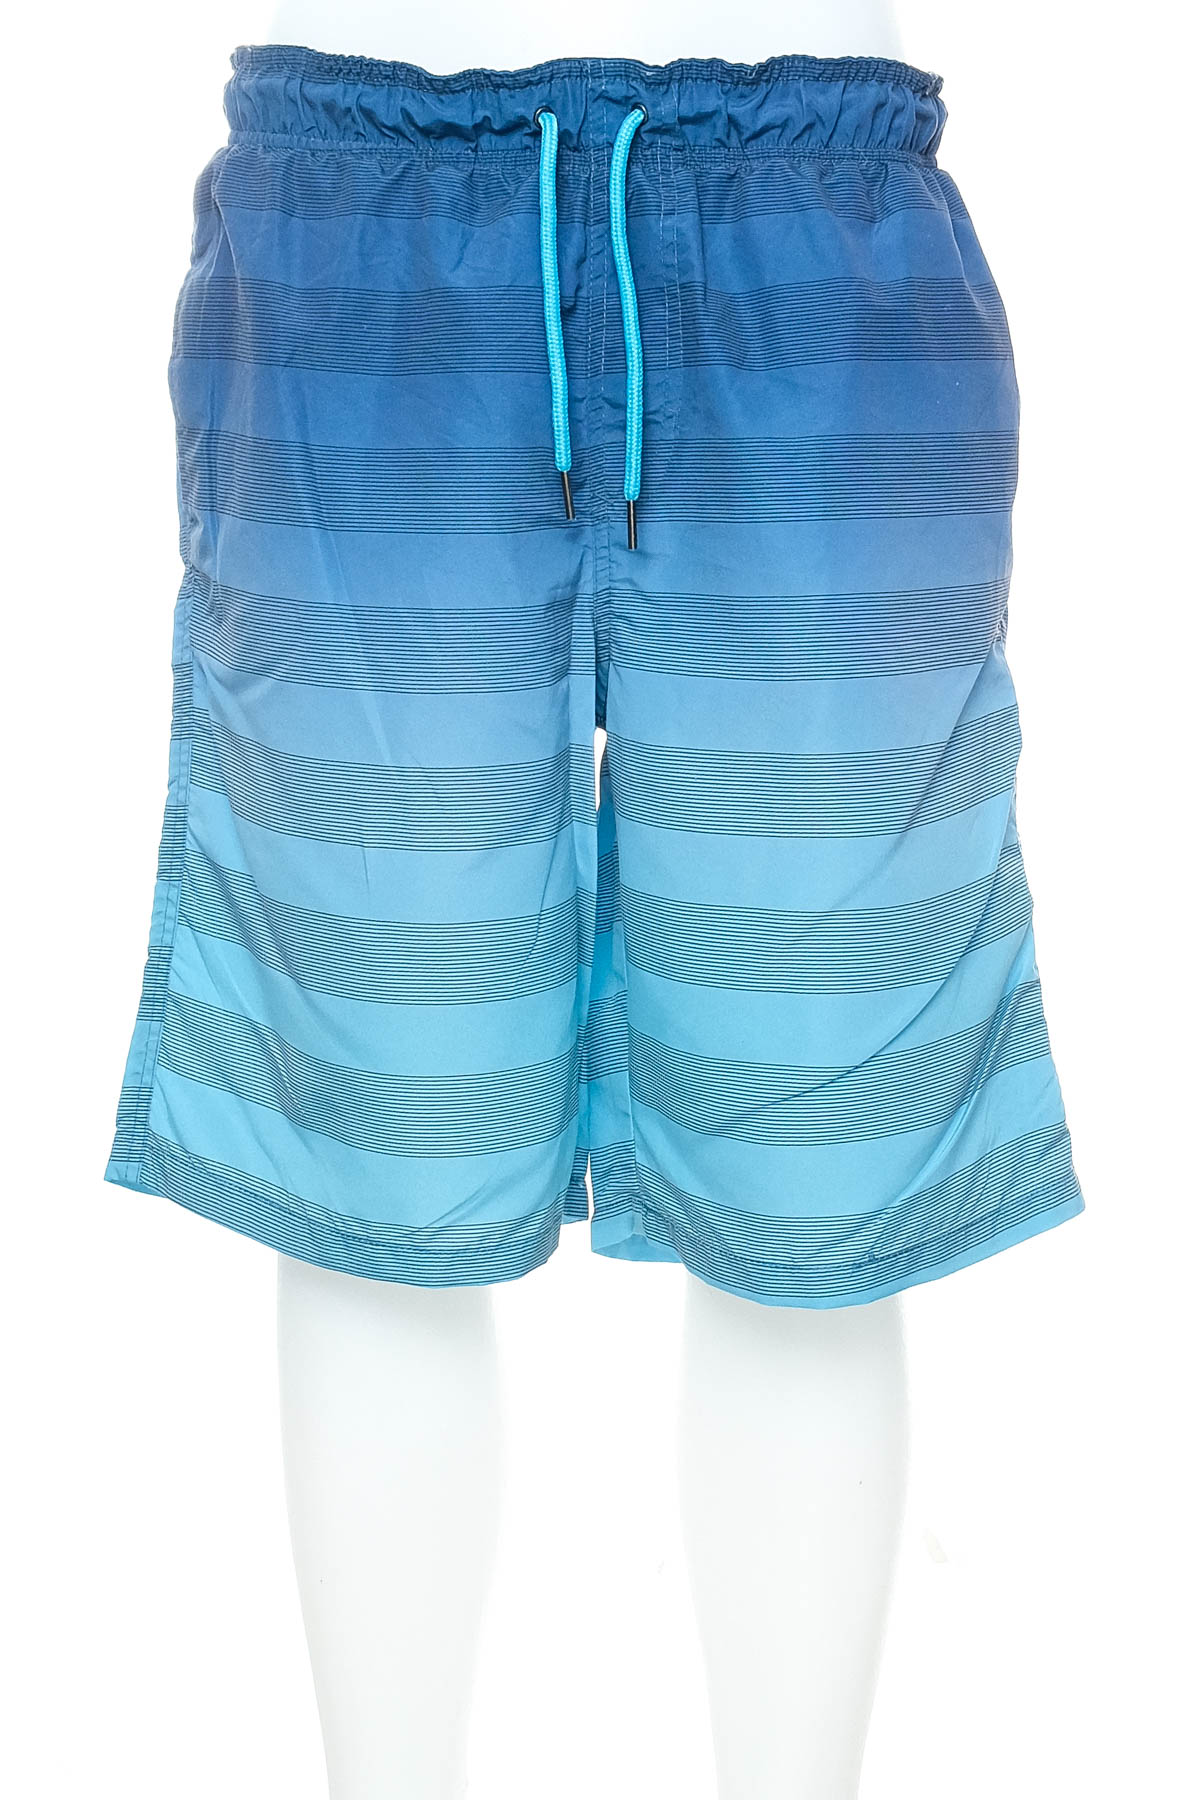 Men's shorts - Colourful Beach - 0